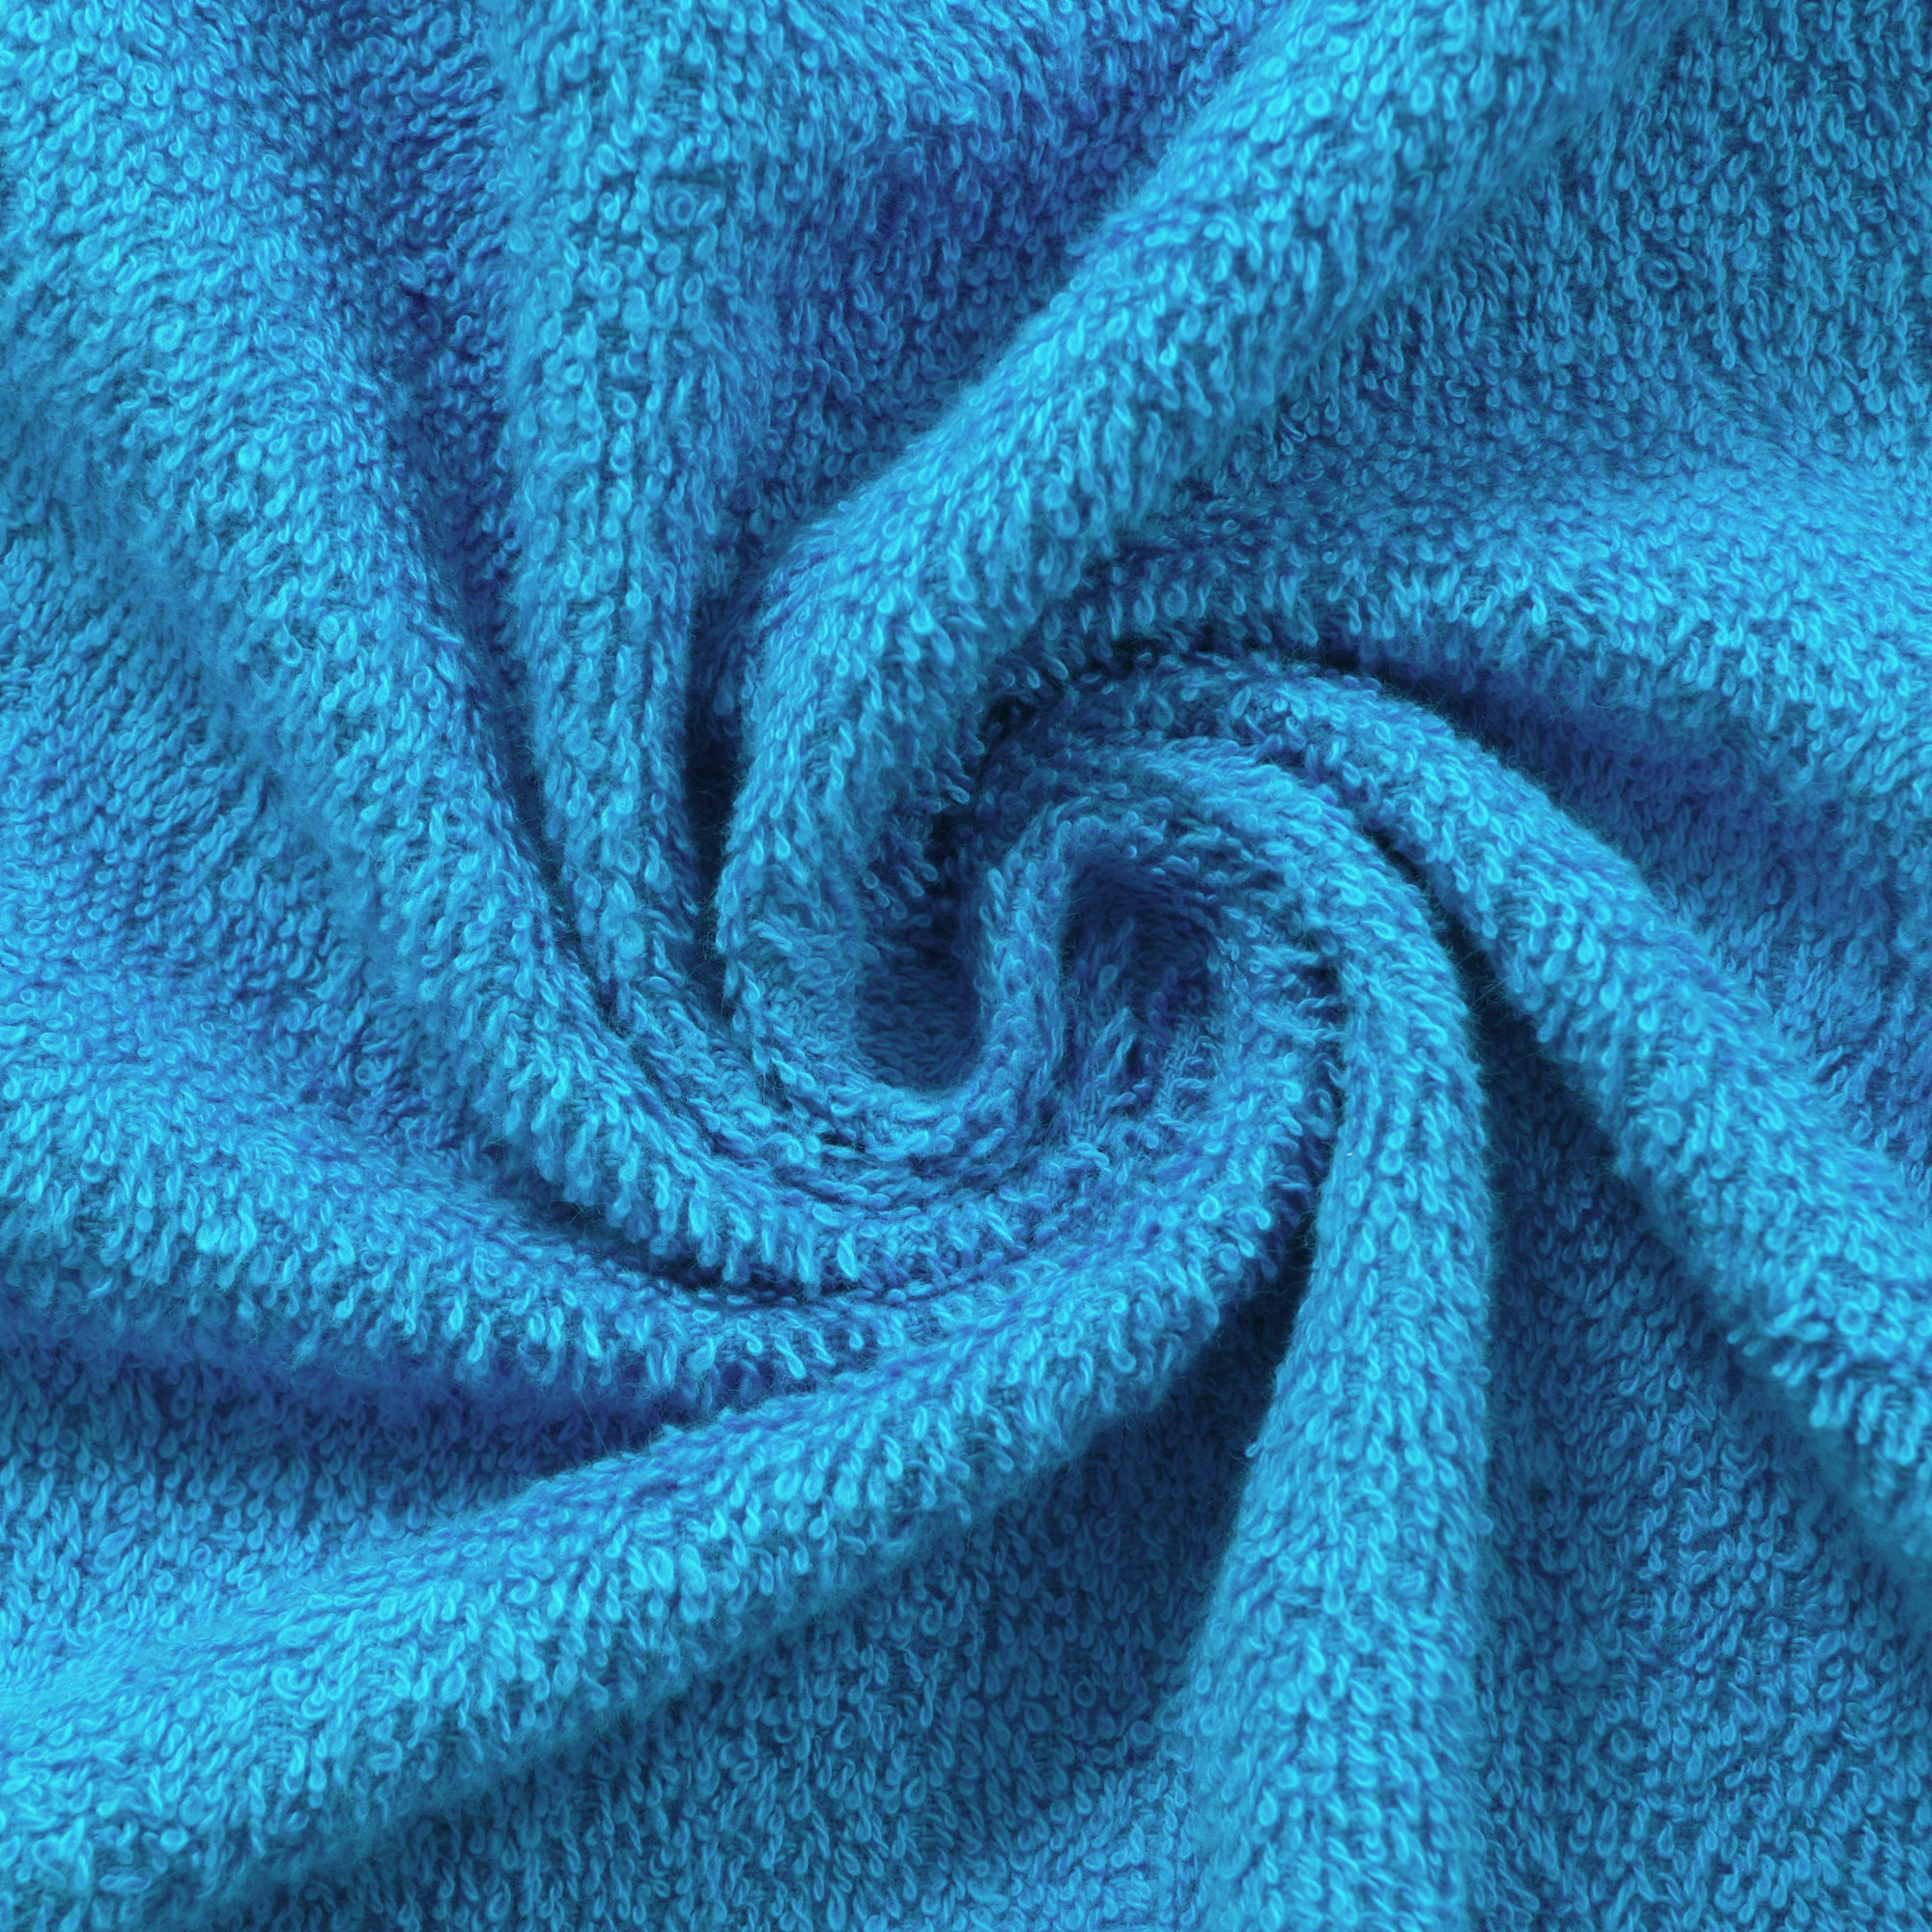 Story@Home 2 Units 100% Cotton Ladies Bath Towel - Blue